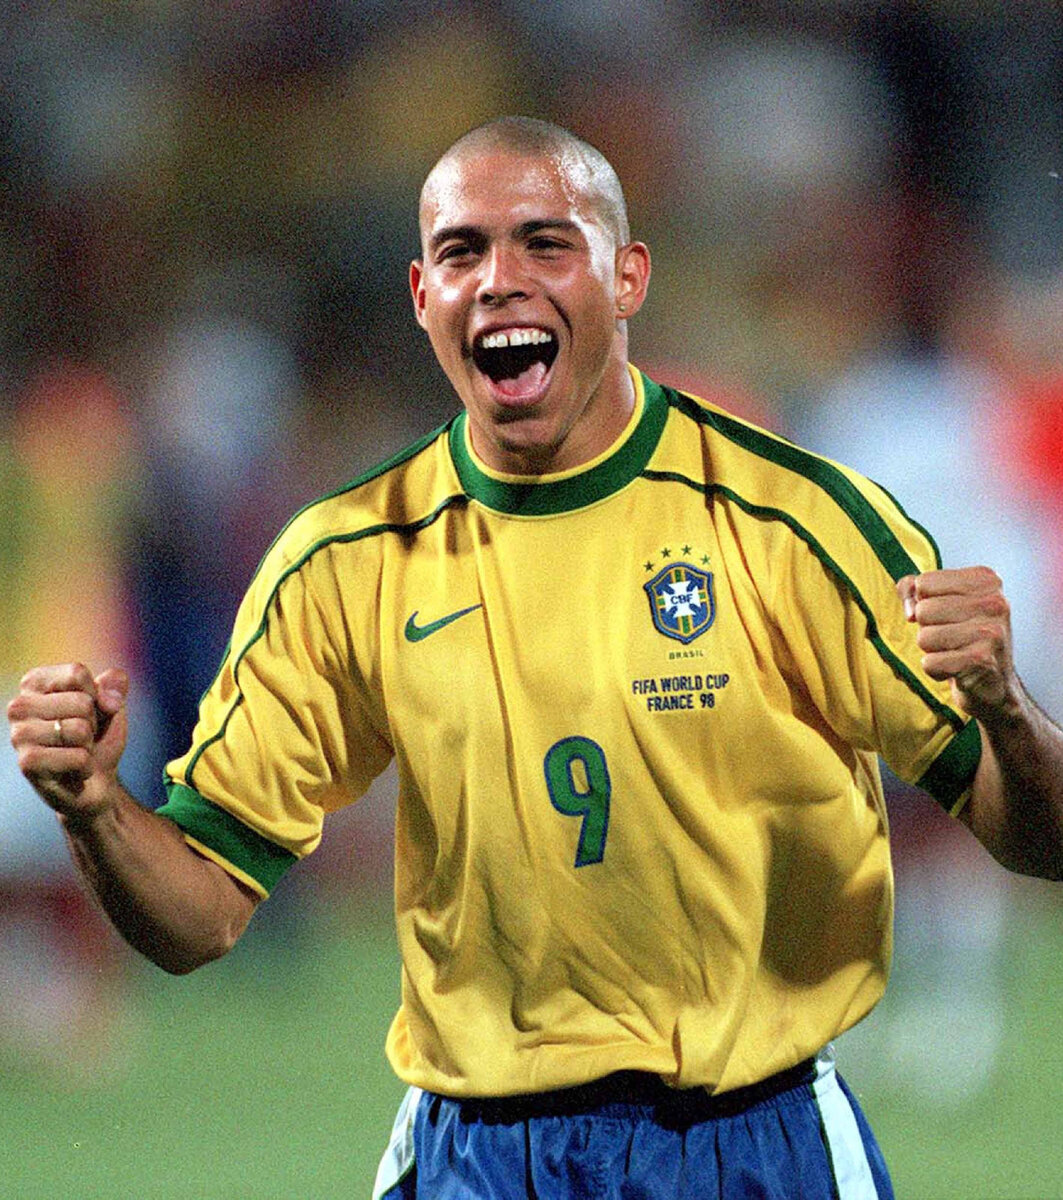   Зубастик Роналдо, настоящее имя которого Роналдо де Асис Морейра Жуниор, является бразильским футболистом, который считается одним из лучших нападающих в истории.